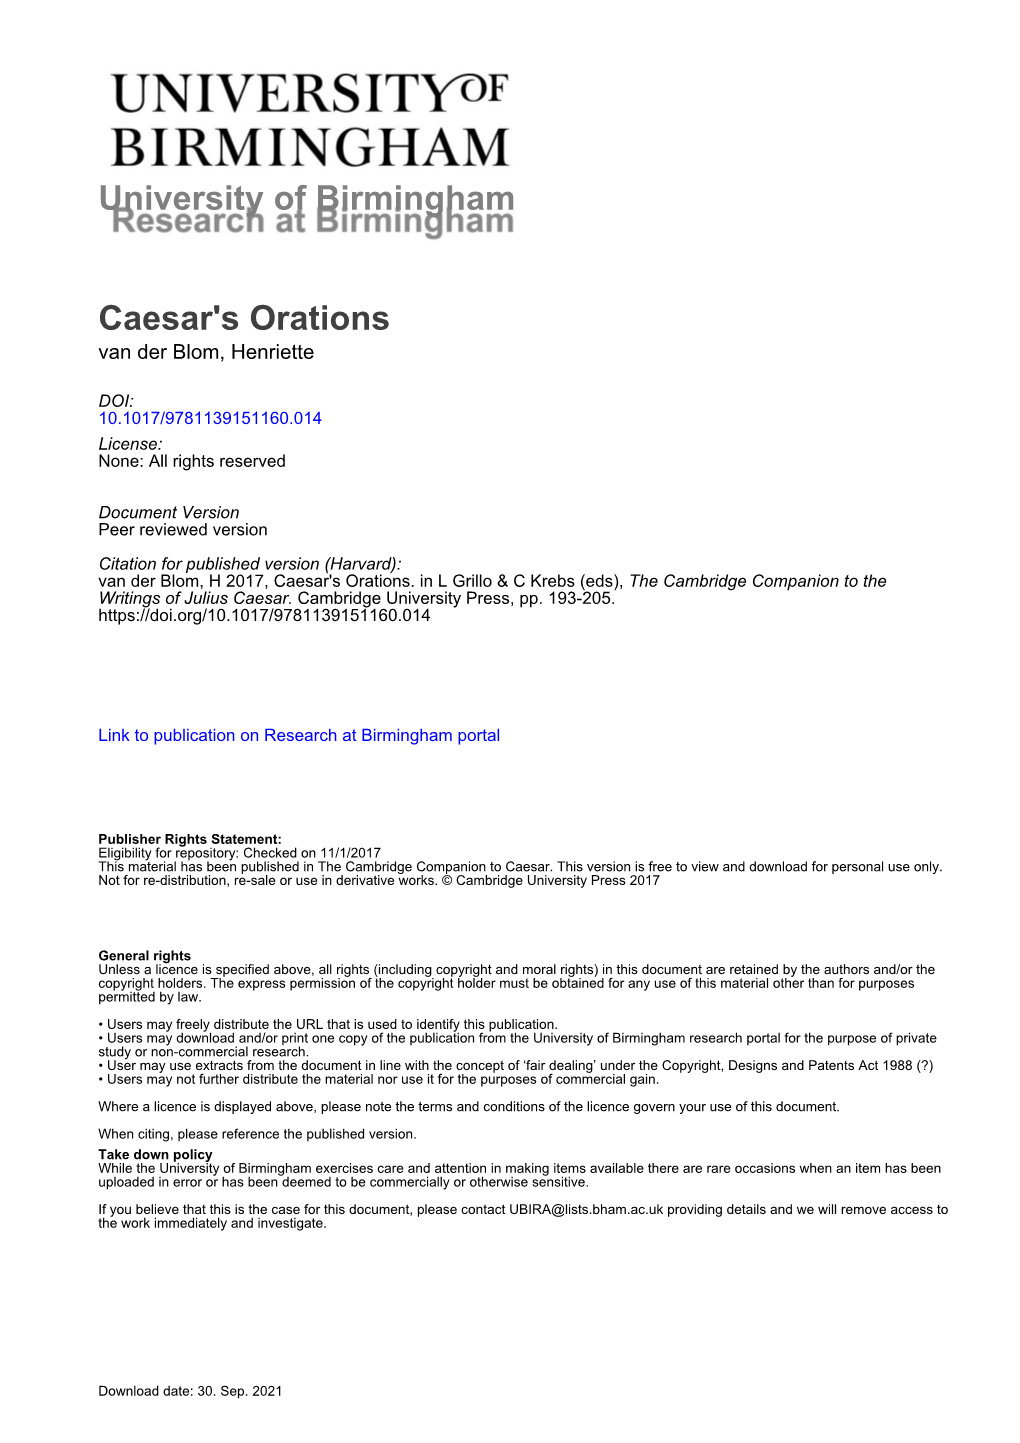 University of Birmingham Caesar's Orations